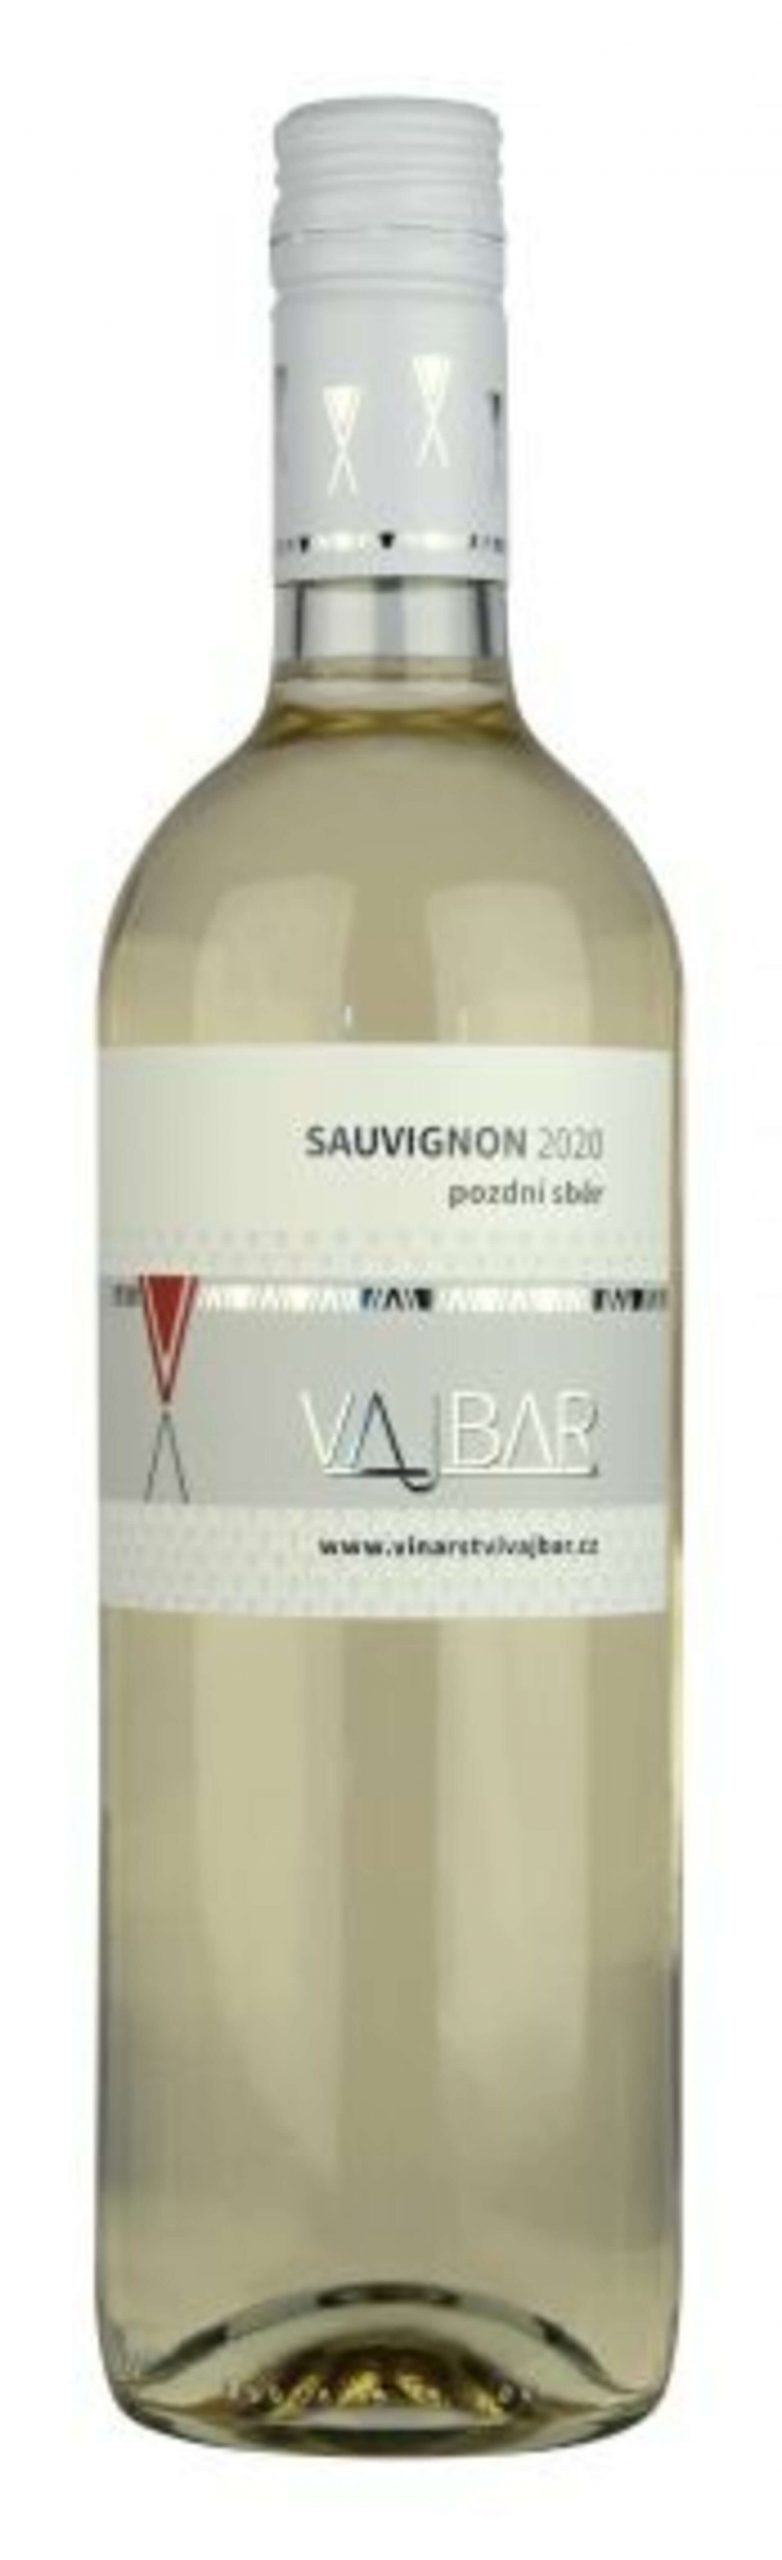 Vajbar Sauvignon jakostní víno s přívlastkem pozdní sběr 2020 suché 750 ml